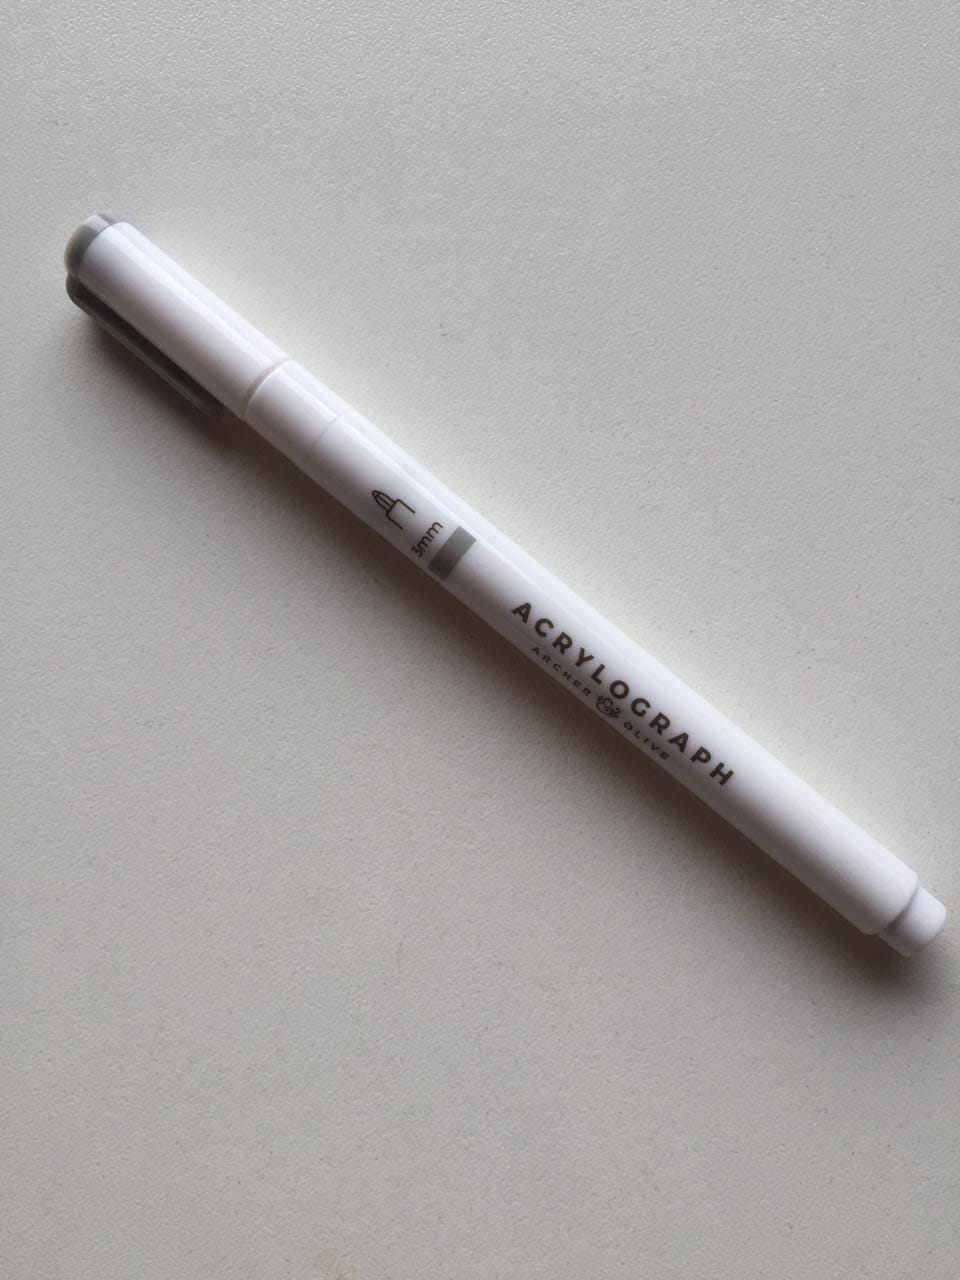 SALE Archer & Olive - Acrylograph Pens Unitarios tip 3mm NUEVOS Archer & Olive